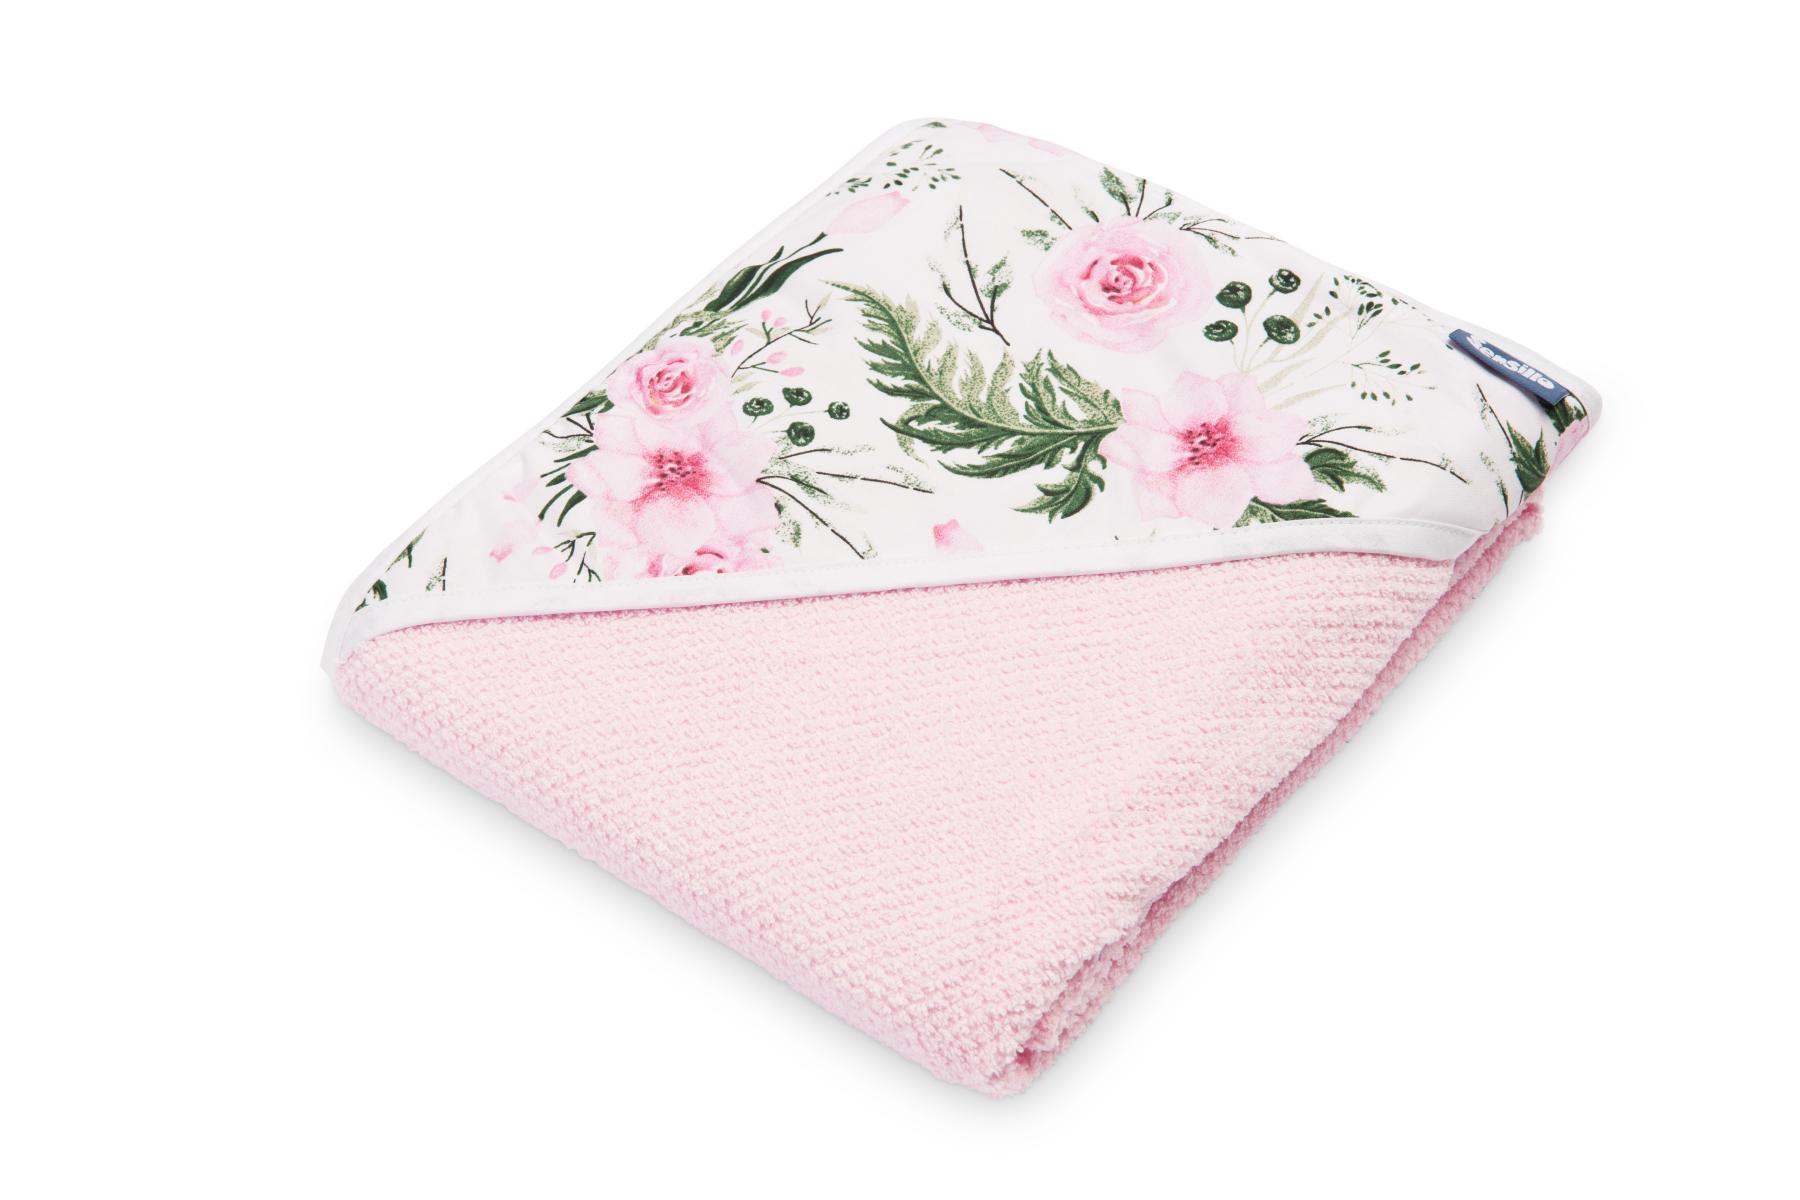 Crepe hooded bath towel – pink